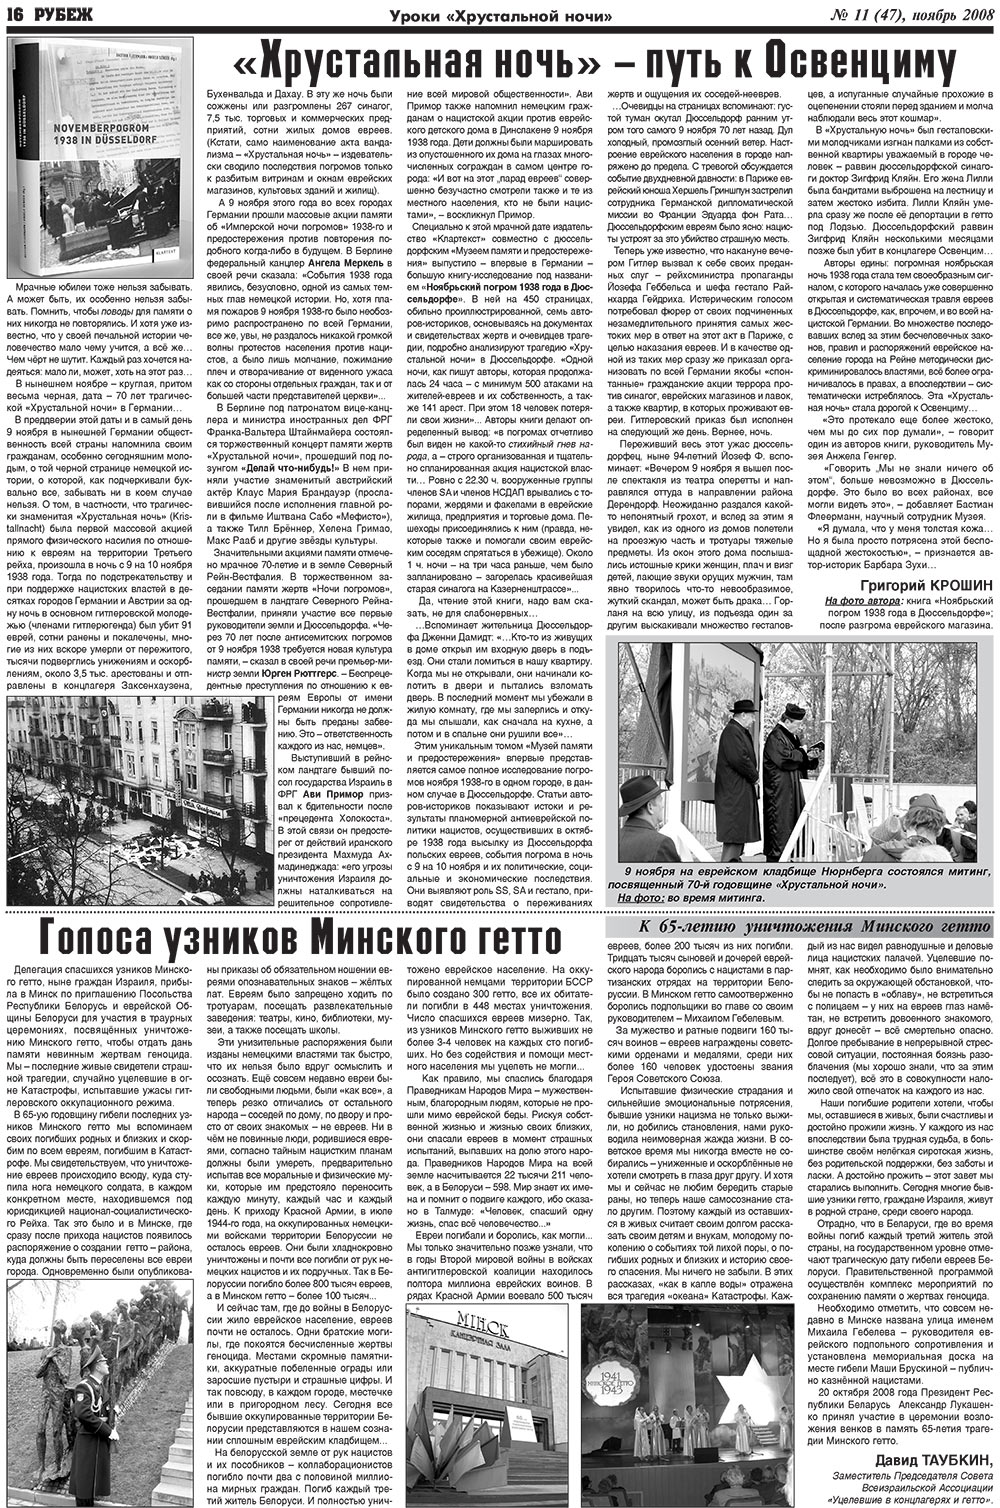 Рубеж (газета). 2008 год, номер 11, стр. 16